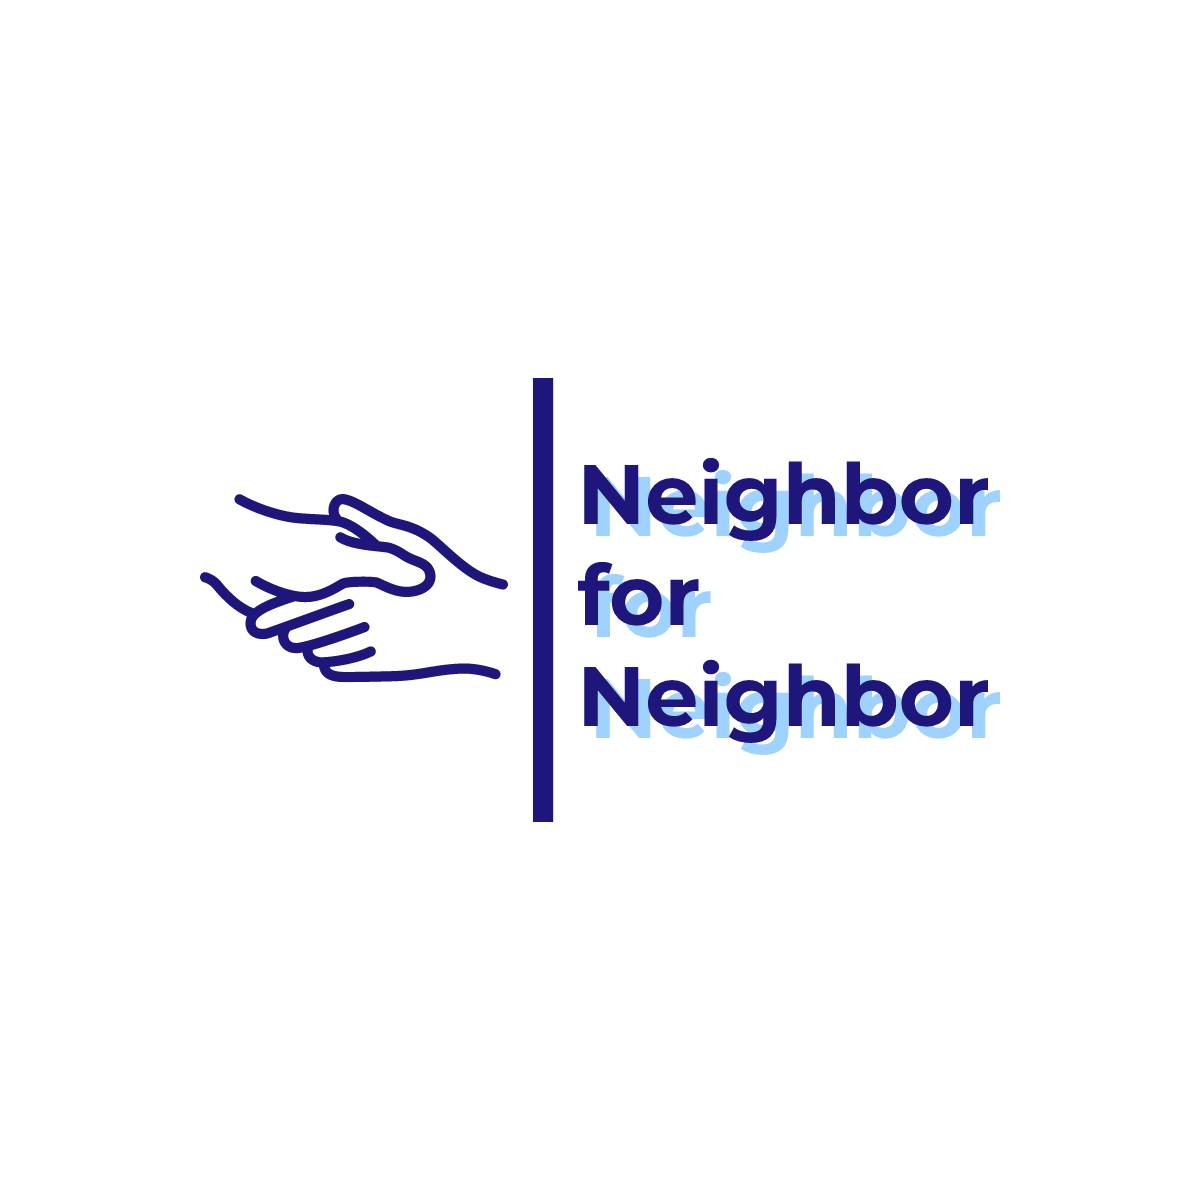 Neighbor for Neighbor